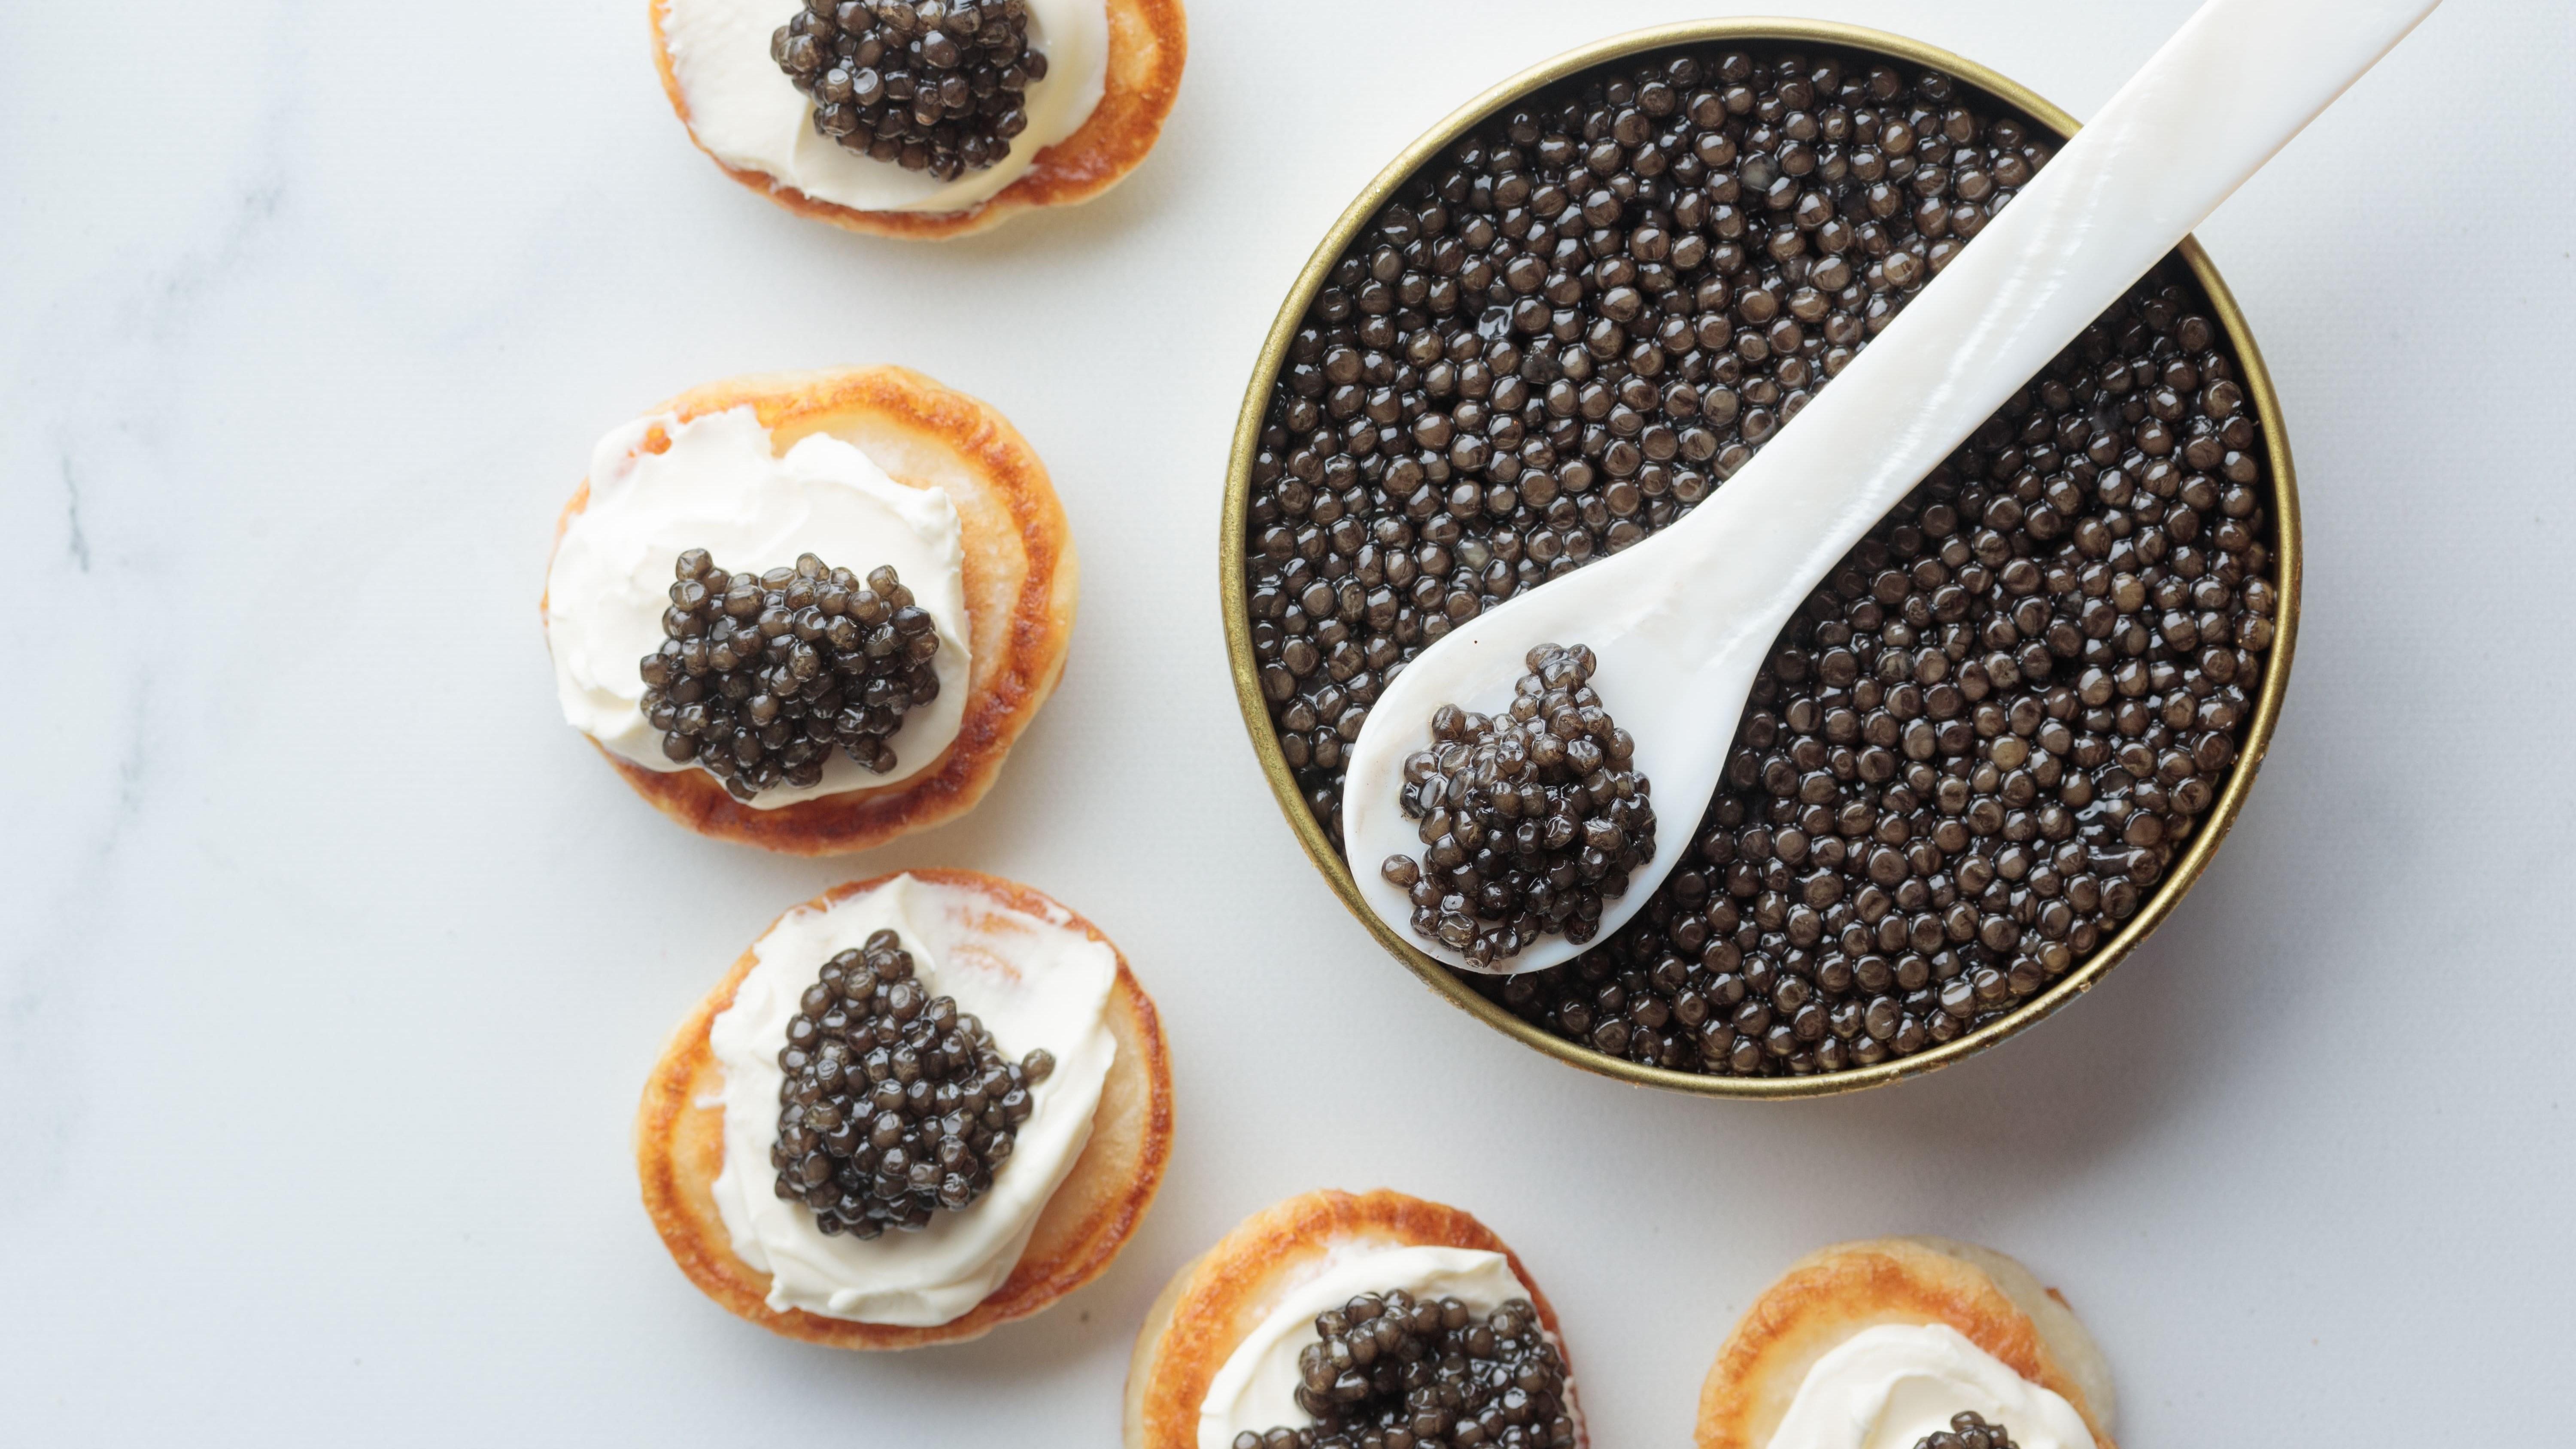 Kaviarburk med pärlemorsked, omringad av blinier med smetana och kaviar.